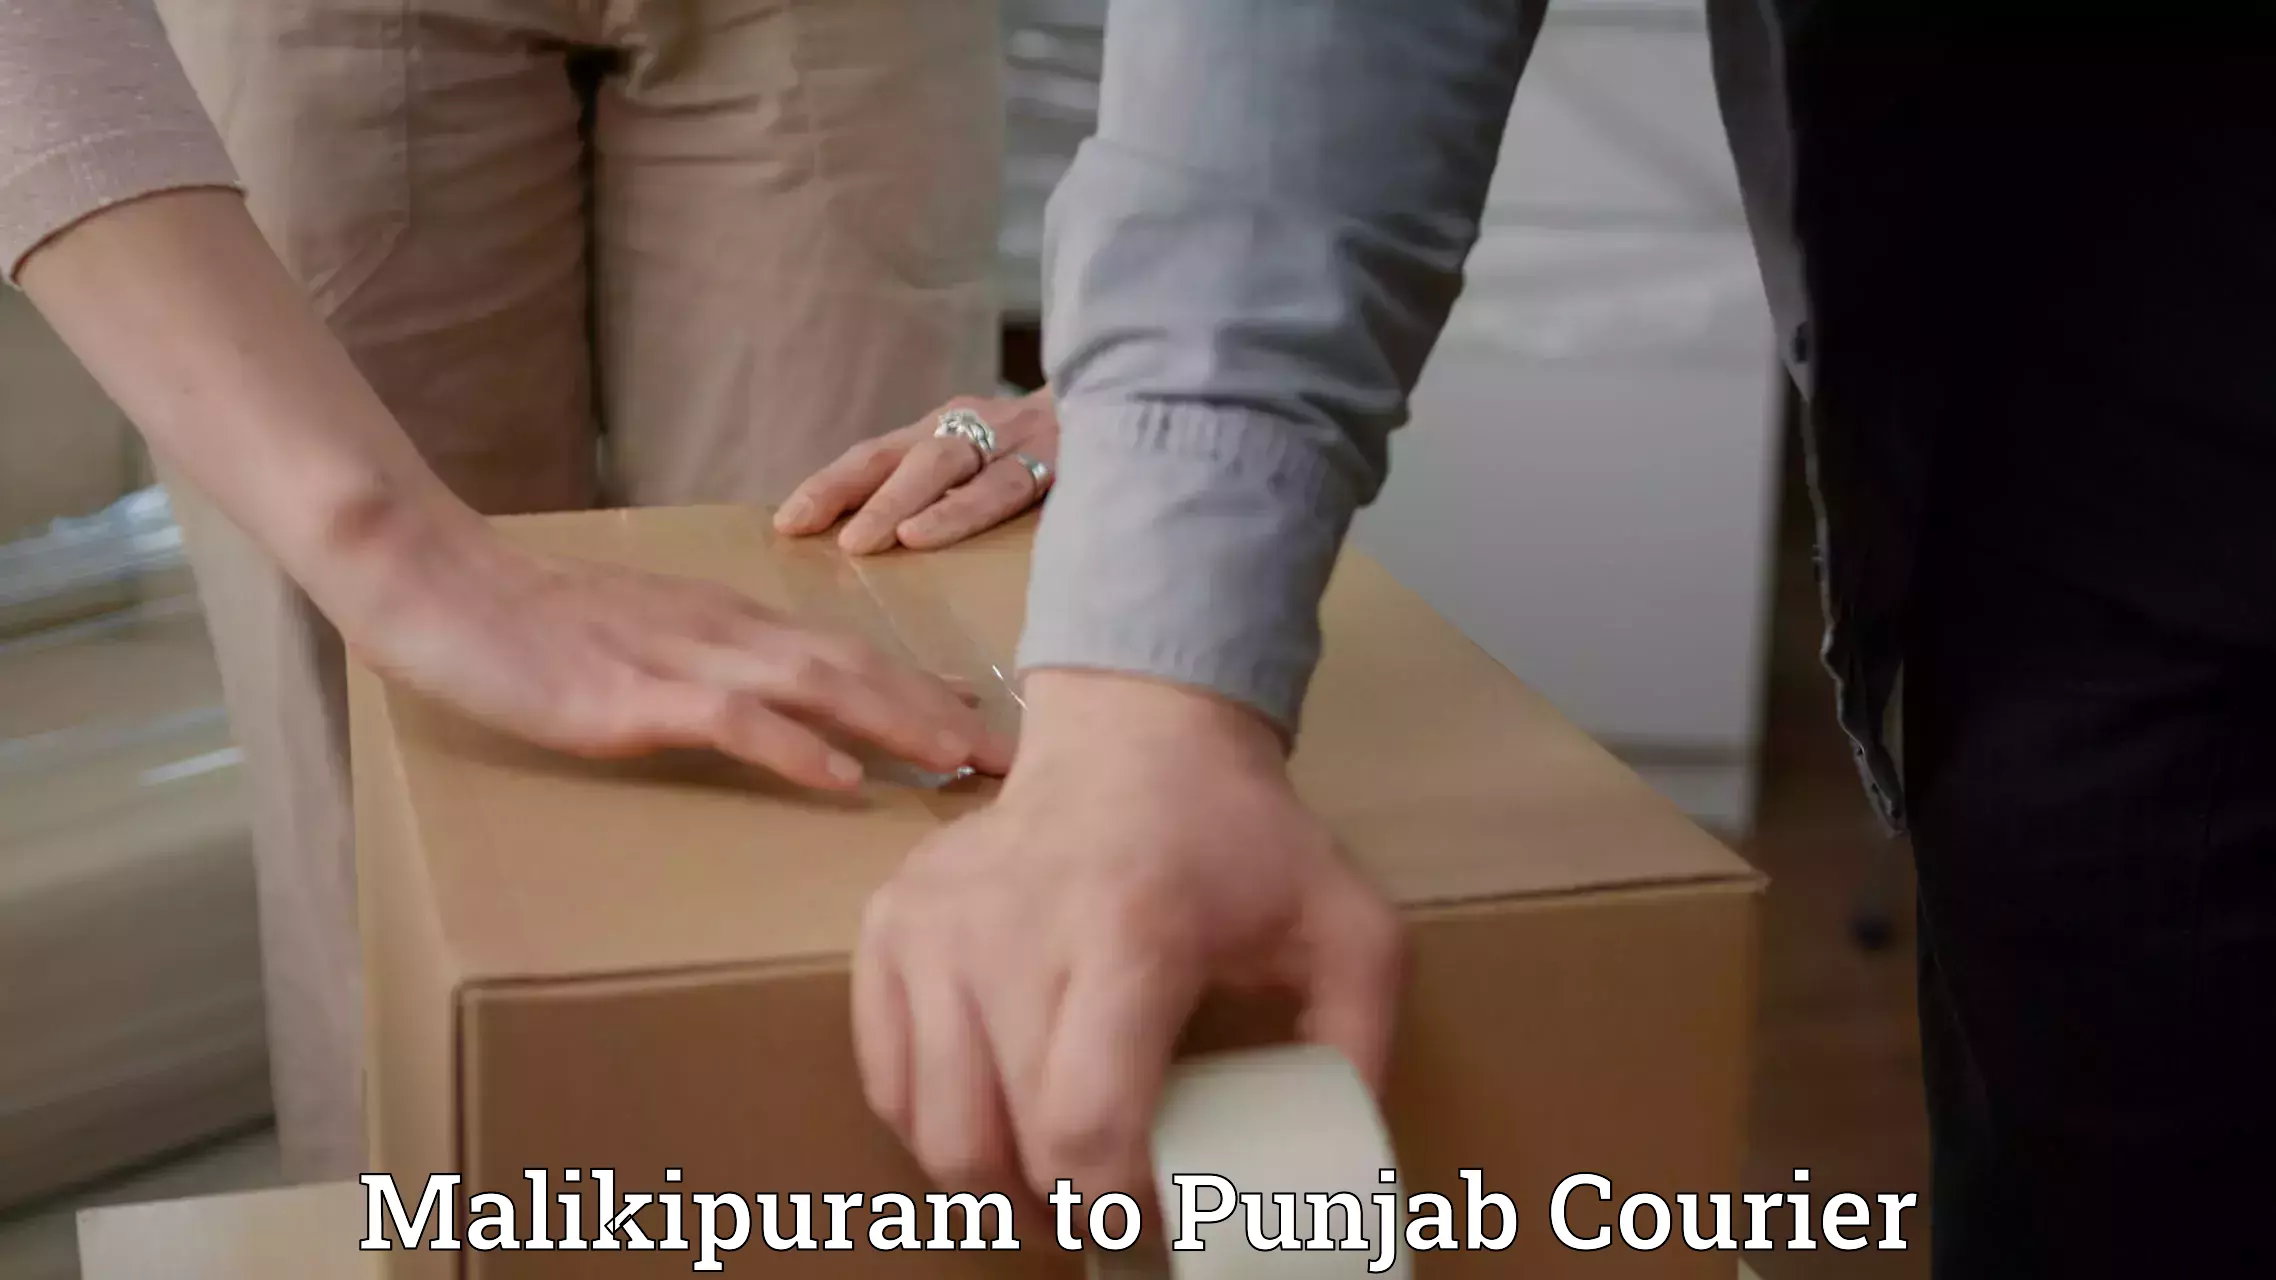 Affordable parcel service Malikipuram to IIT Ropar